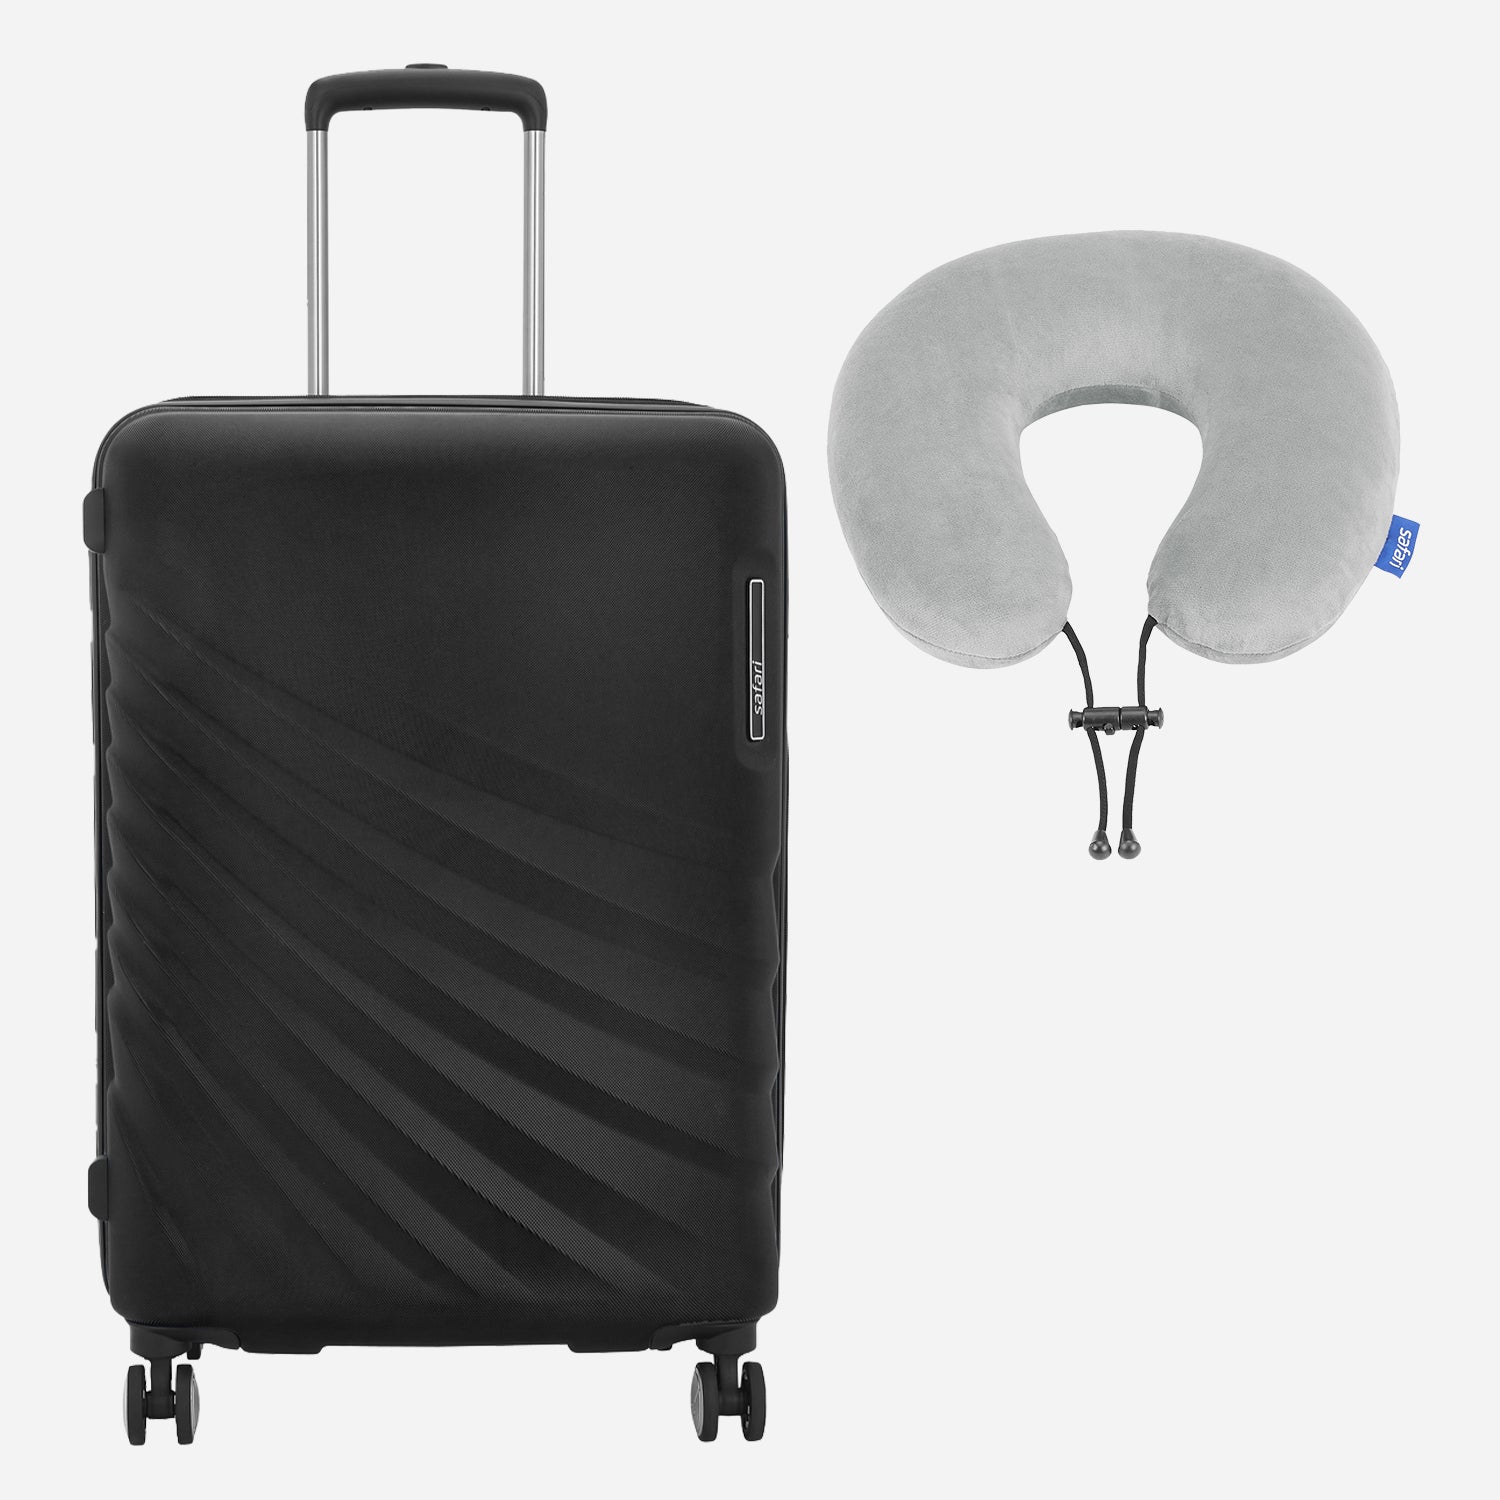 Polaris Hard Luggage cabin size and Basic Neckpillow - Black